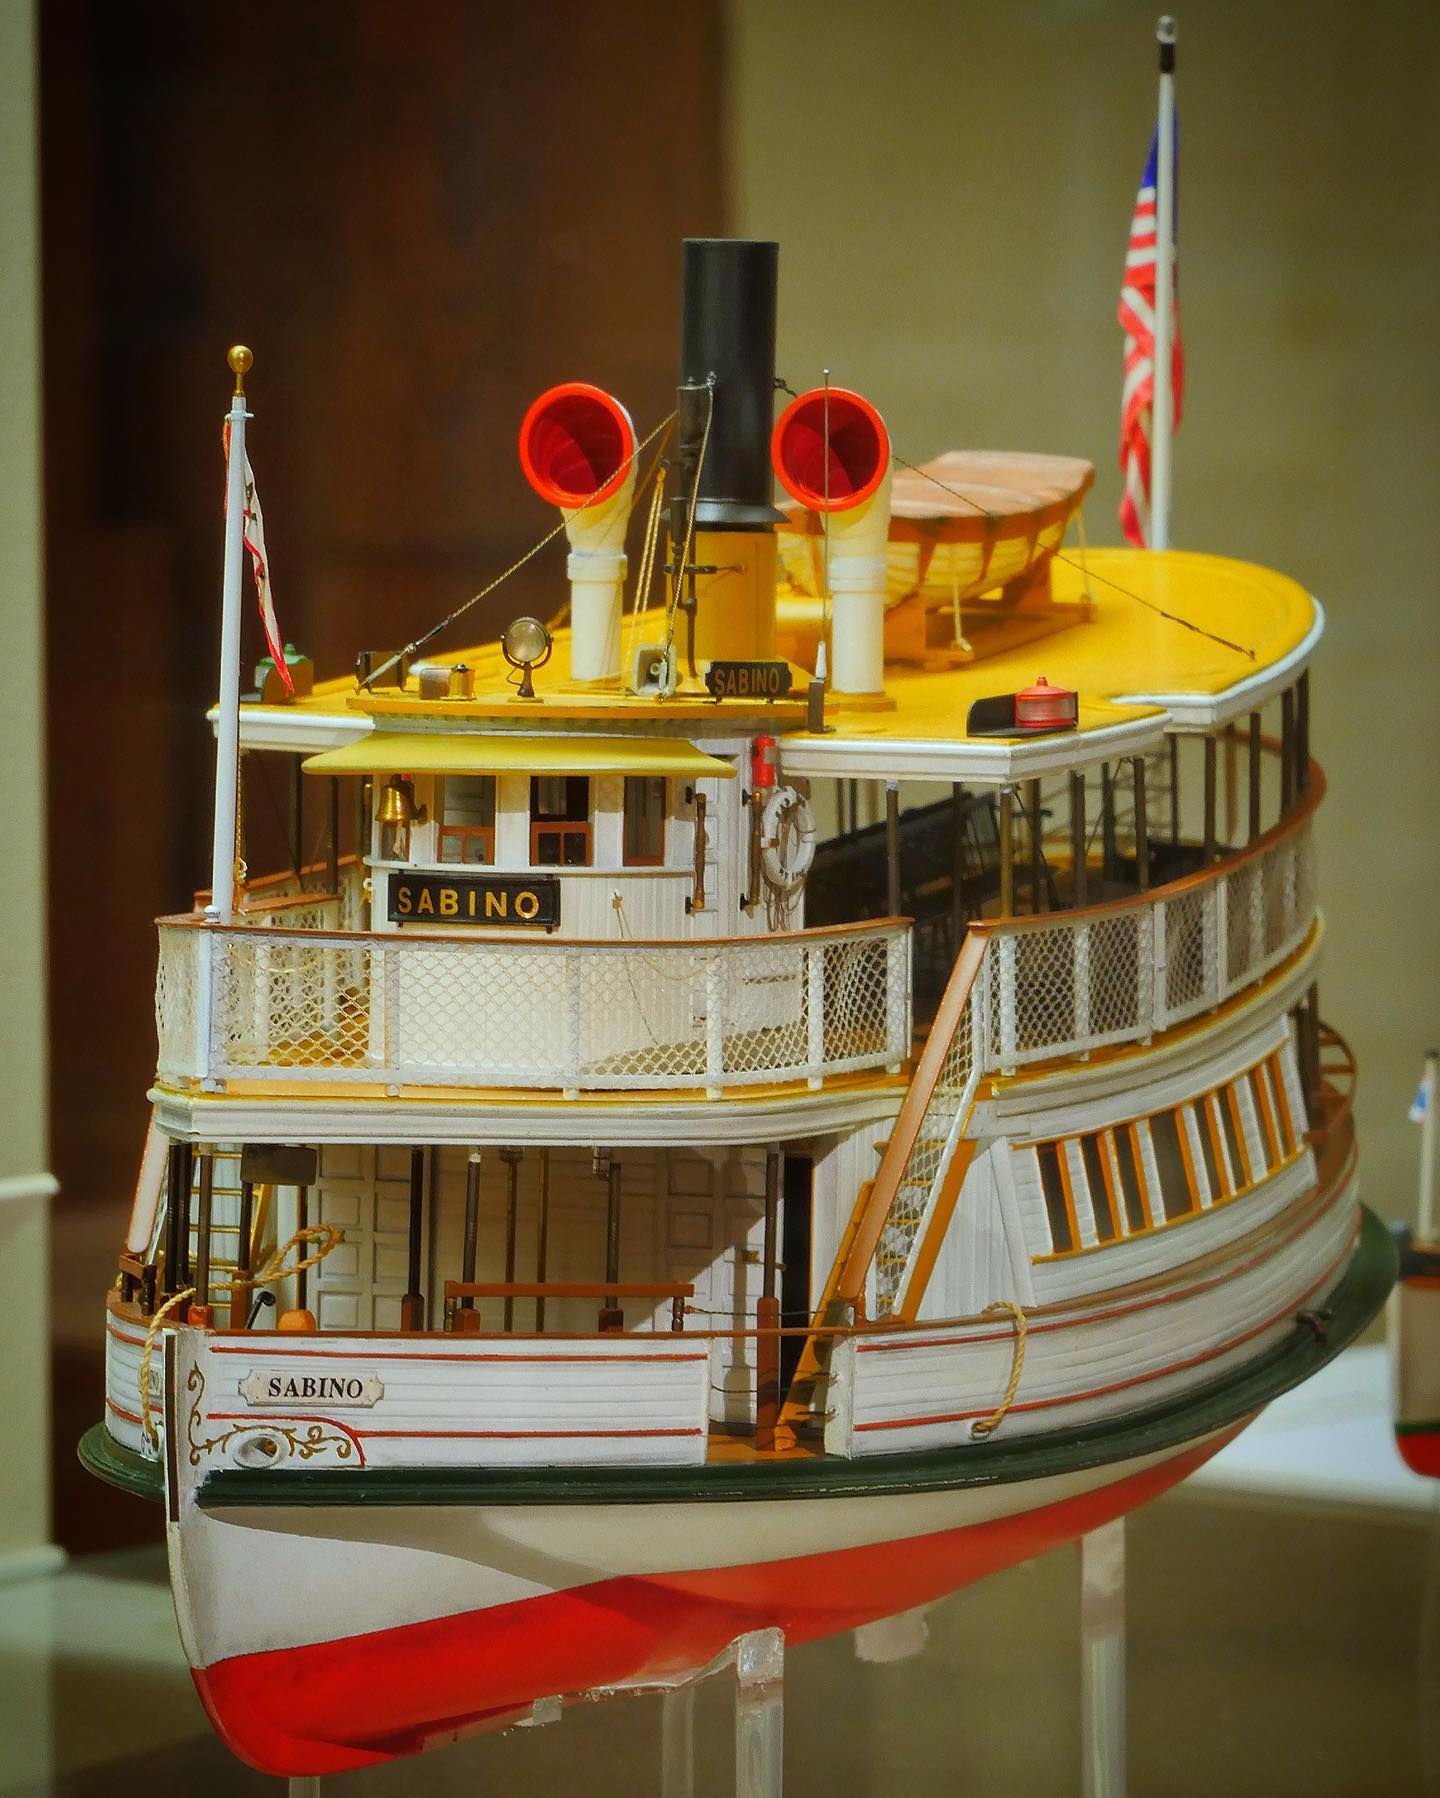 Die Dampffähre Sabino (1908). Dieses unglaublich detaillierte Modell im Maßstab 1:75 ist Teil unserer Dauerausstellung über Binnenschifffahrt und Fähren auf Deck 9 des Museums. Es wurde von dem Modellbauer Anton Happach gebaut.